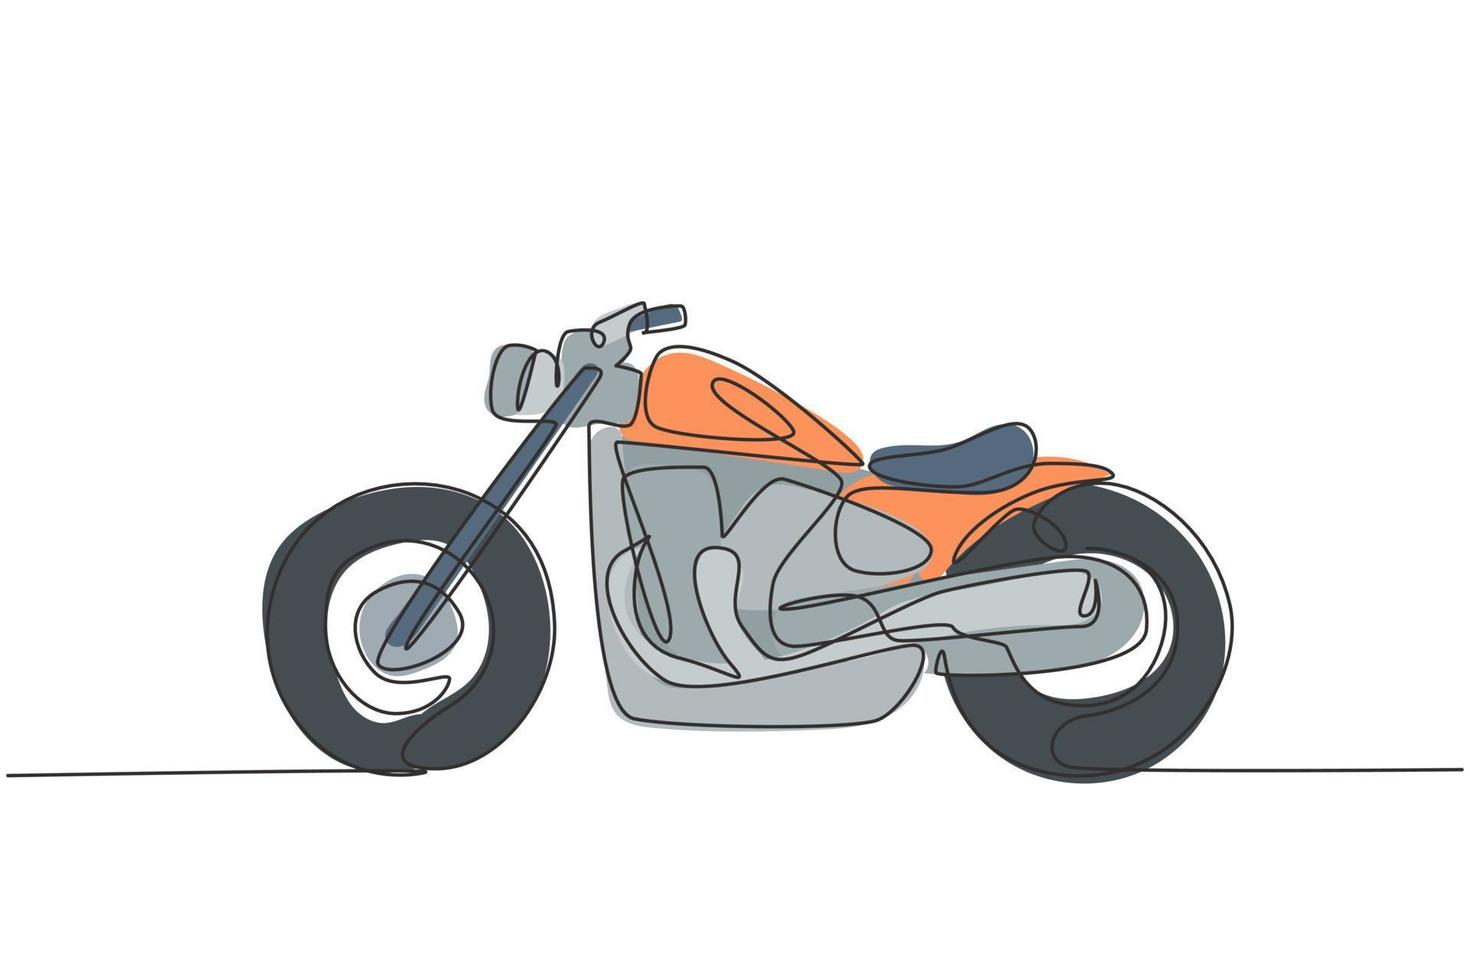 een doorlopende lijntekening van retro oude vintage motorfiets icoon. klassieke motor transport concept enkele lijn tekenen ontwerp grafische vectorillustratie vector